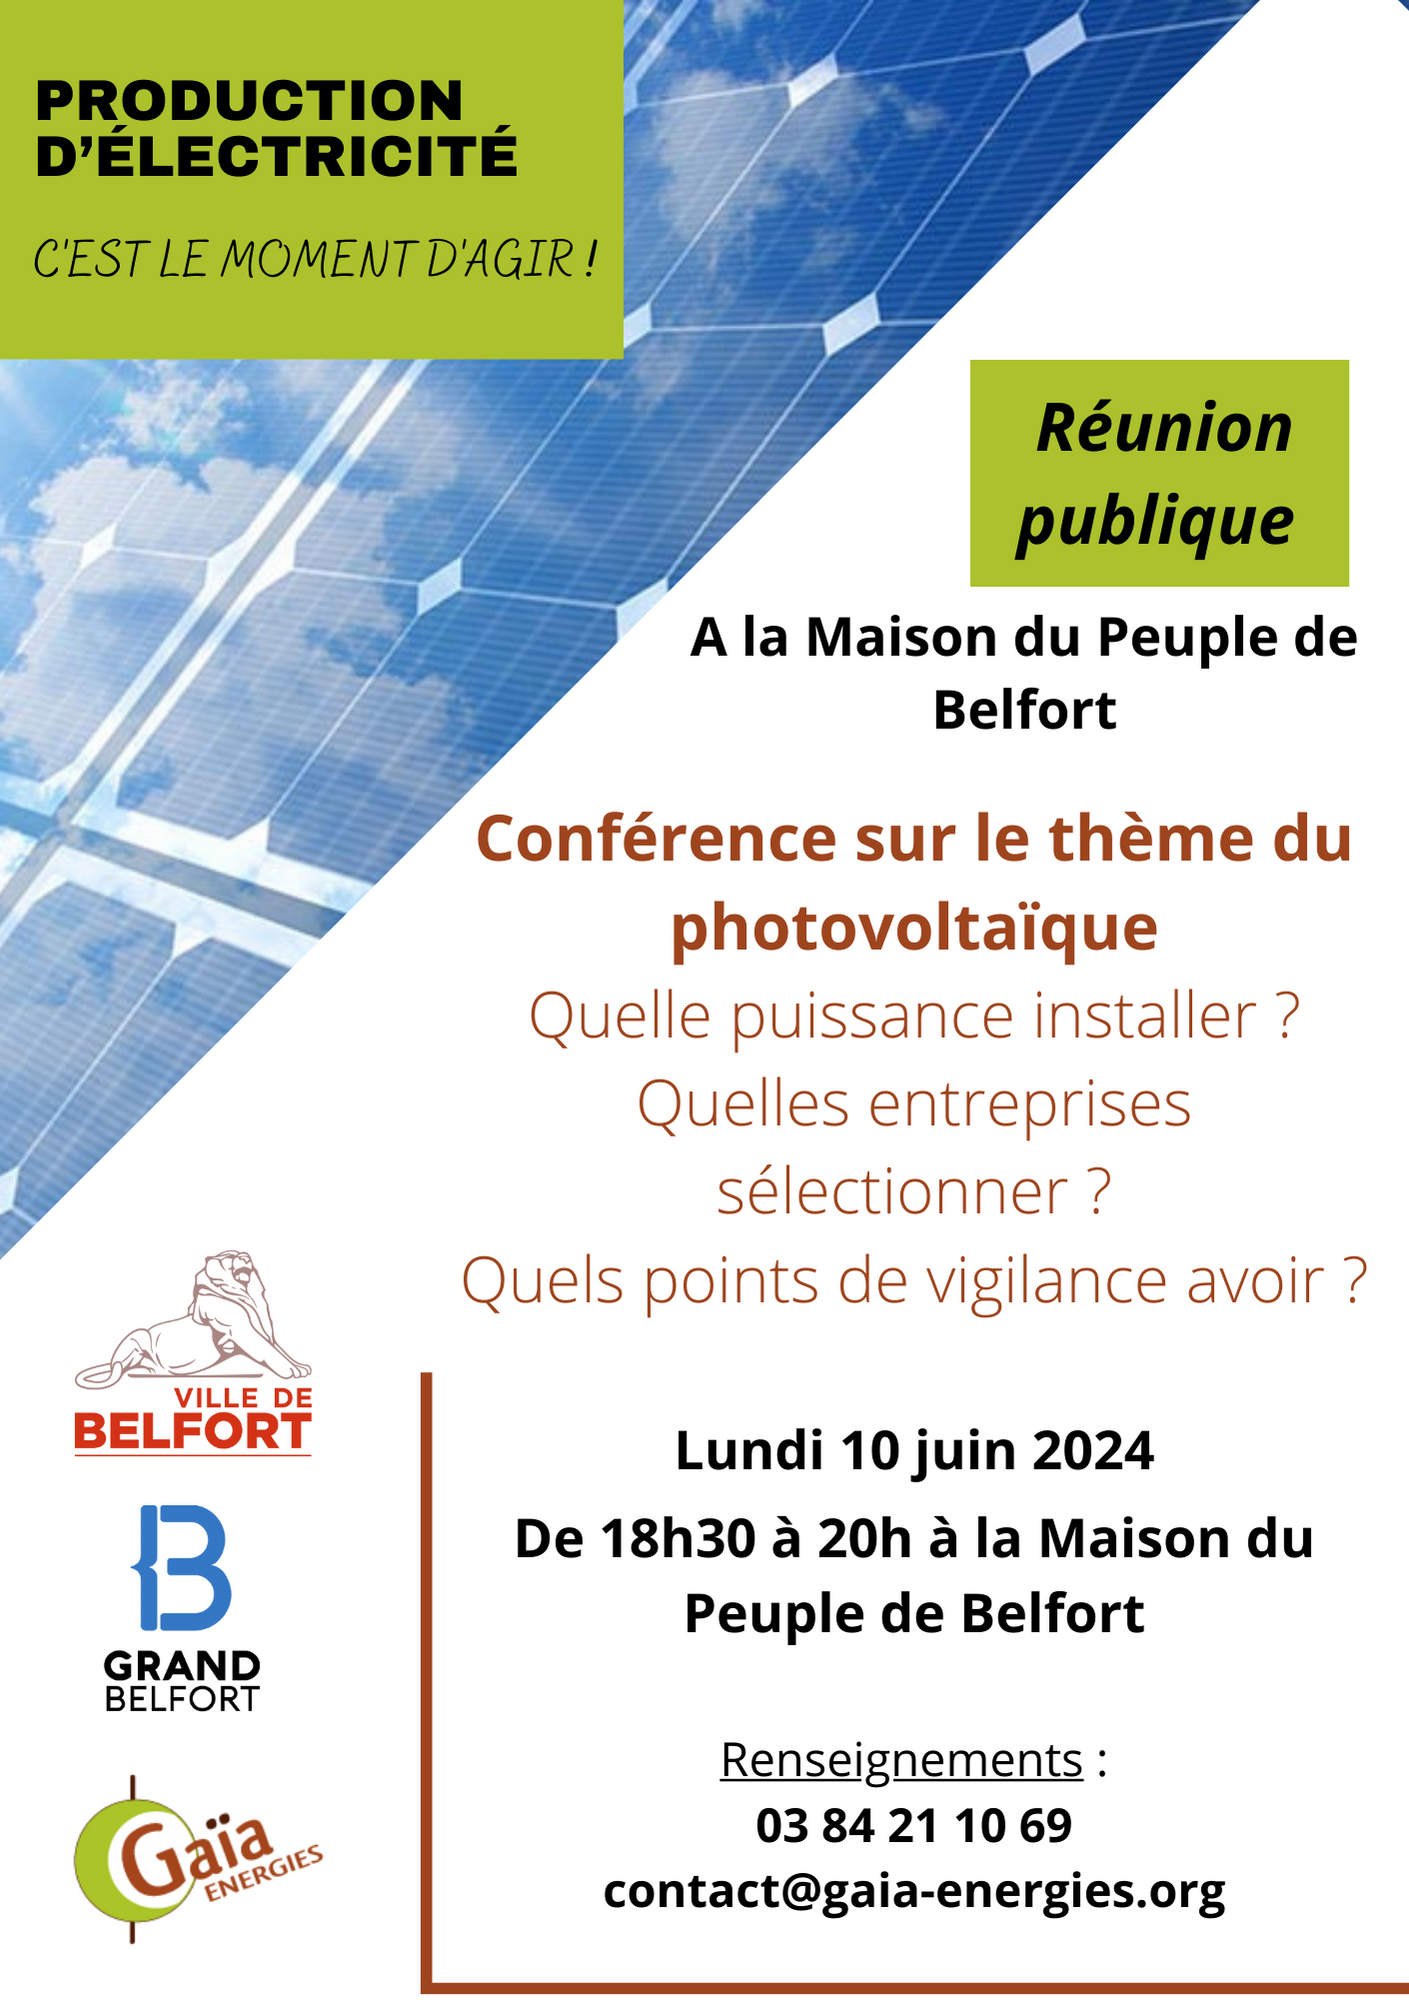 Conférence sur le photovoltaïque